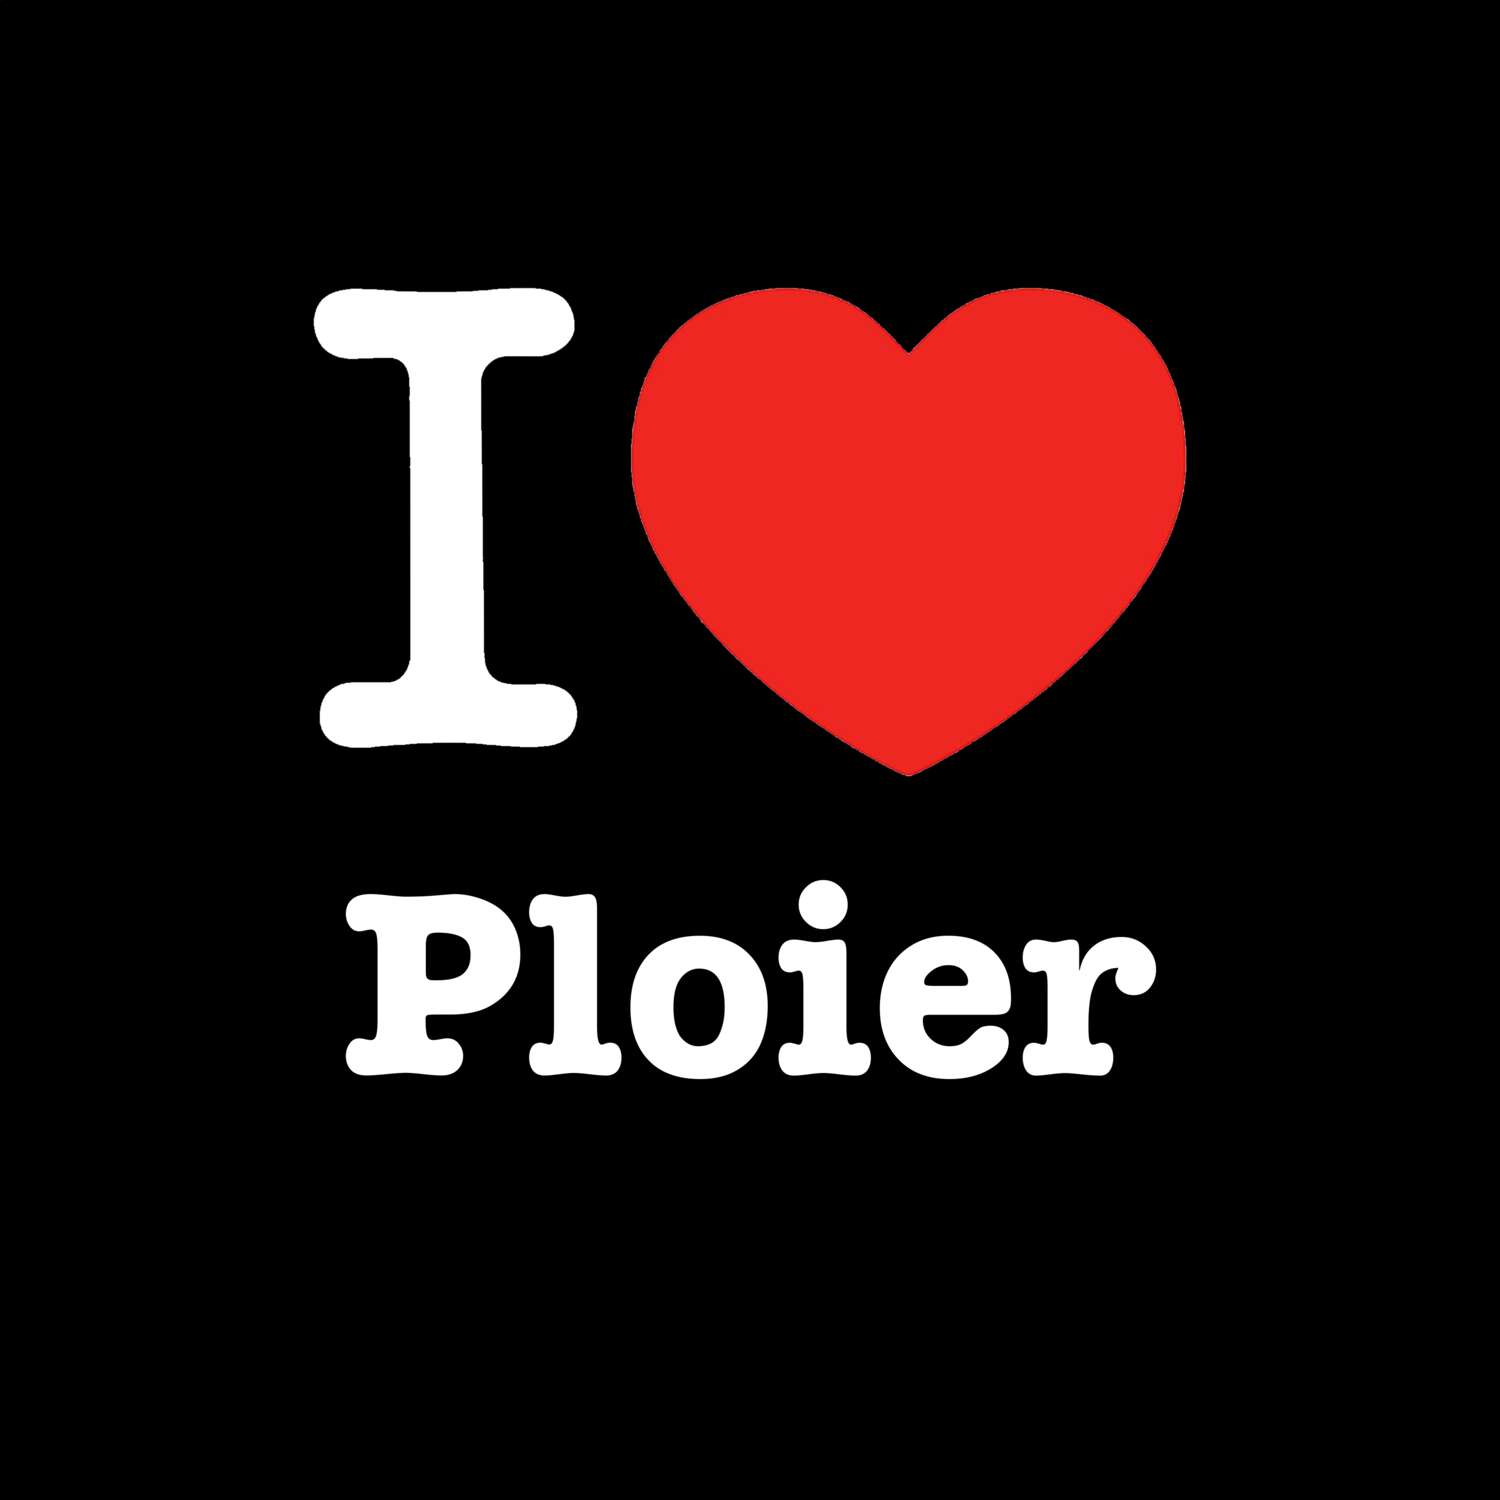 Ploier T-Shirt »I love«